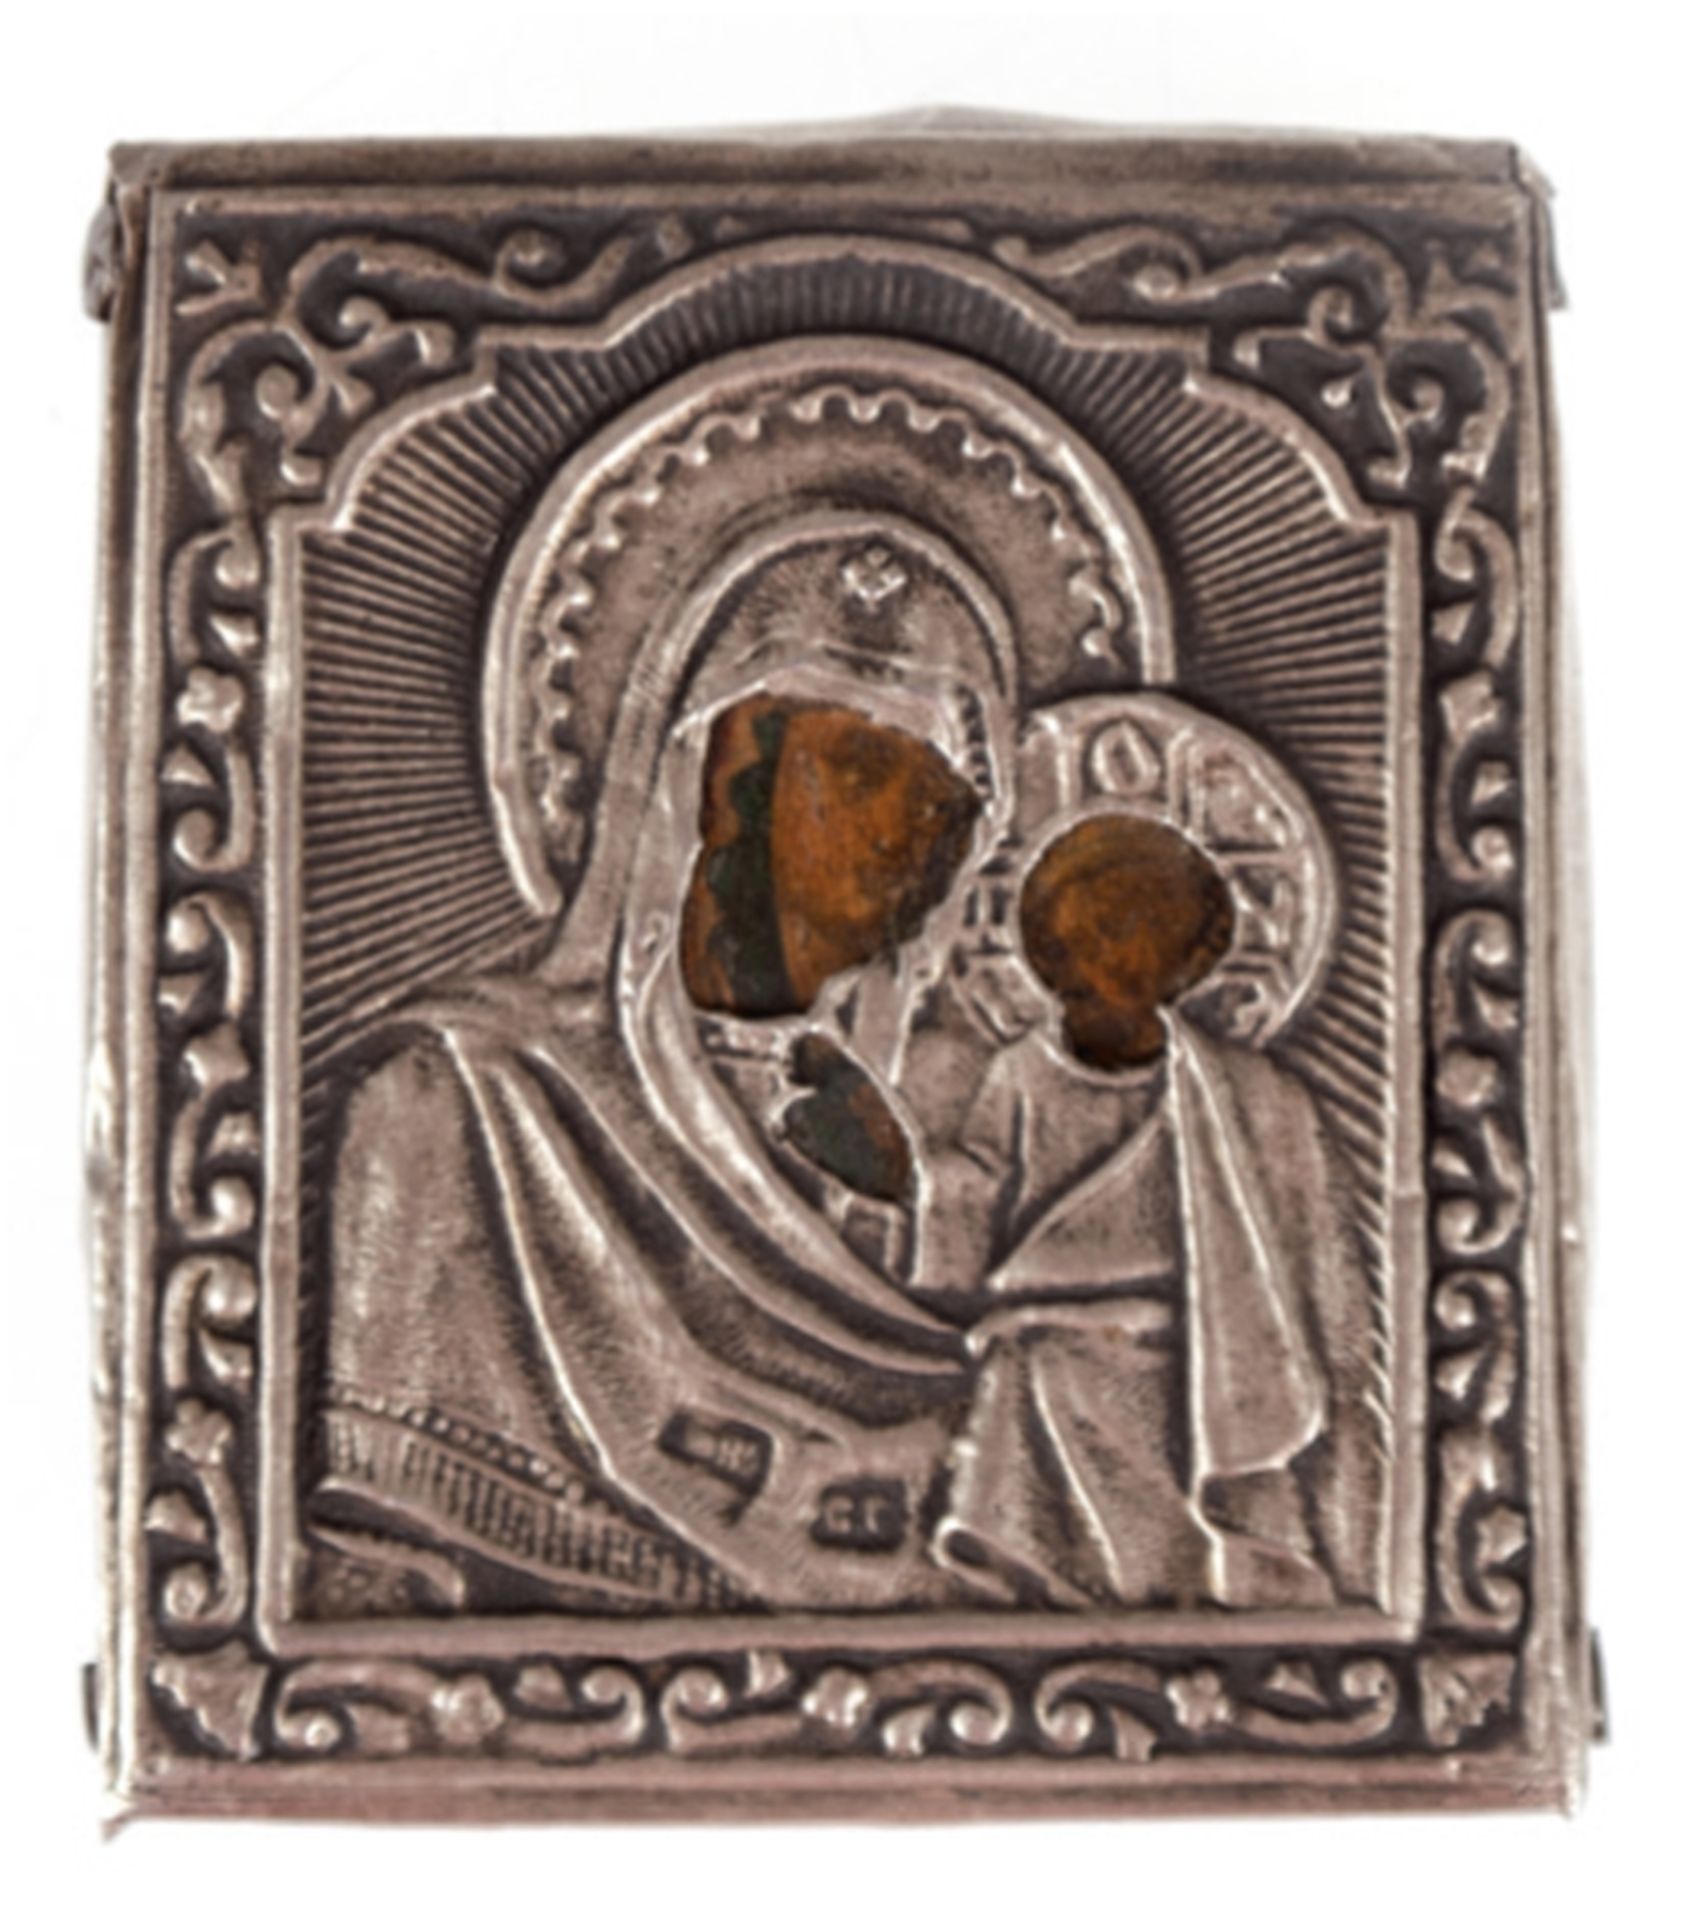 Ikone mit Oklad "Gottesmutter Tichwinskaja", Russland 19. Jh., Silber, punziert, 5x4,5 cm